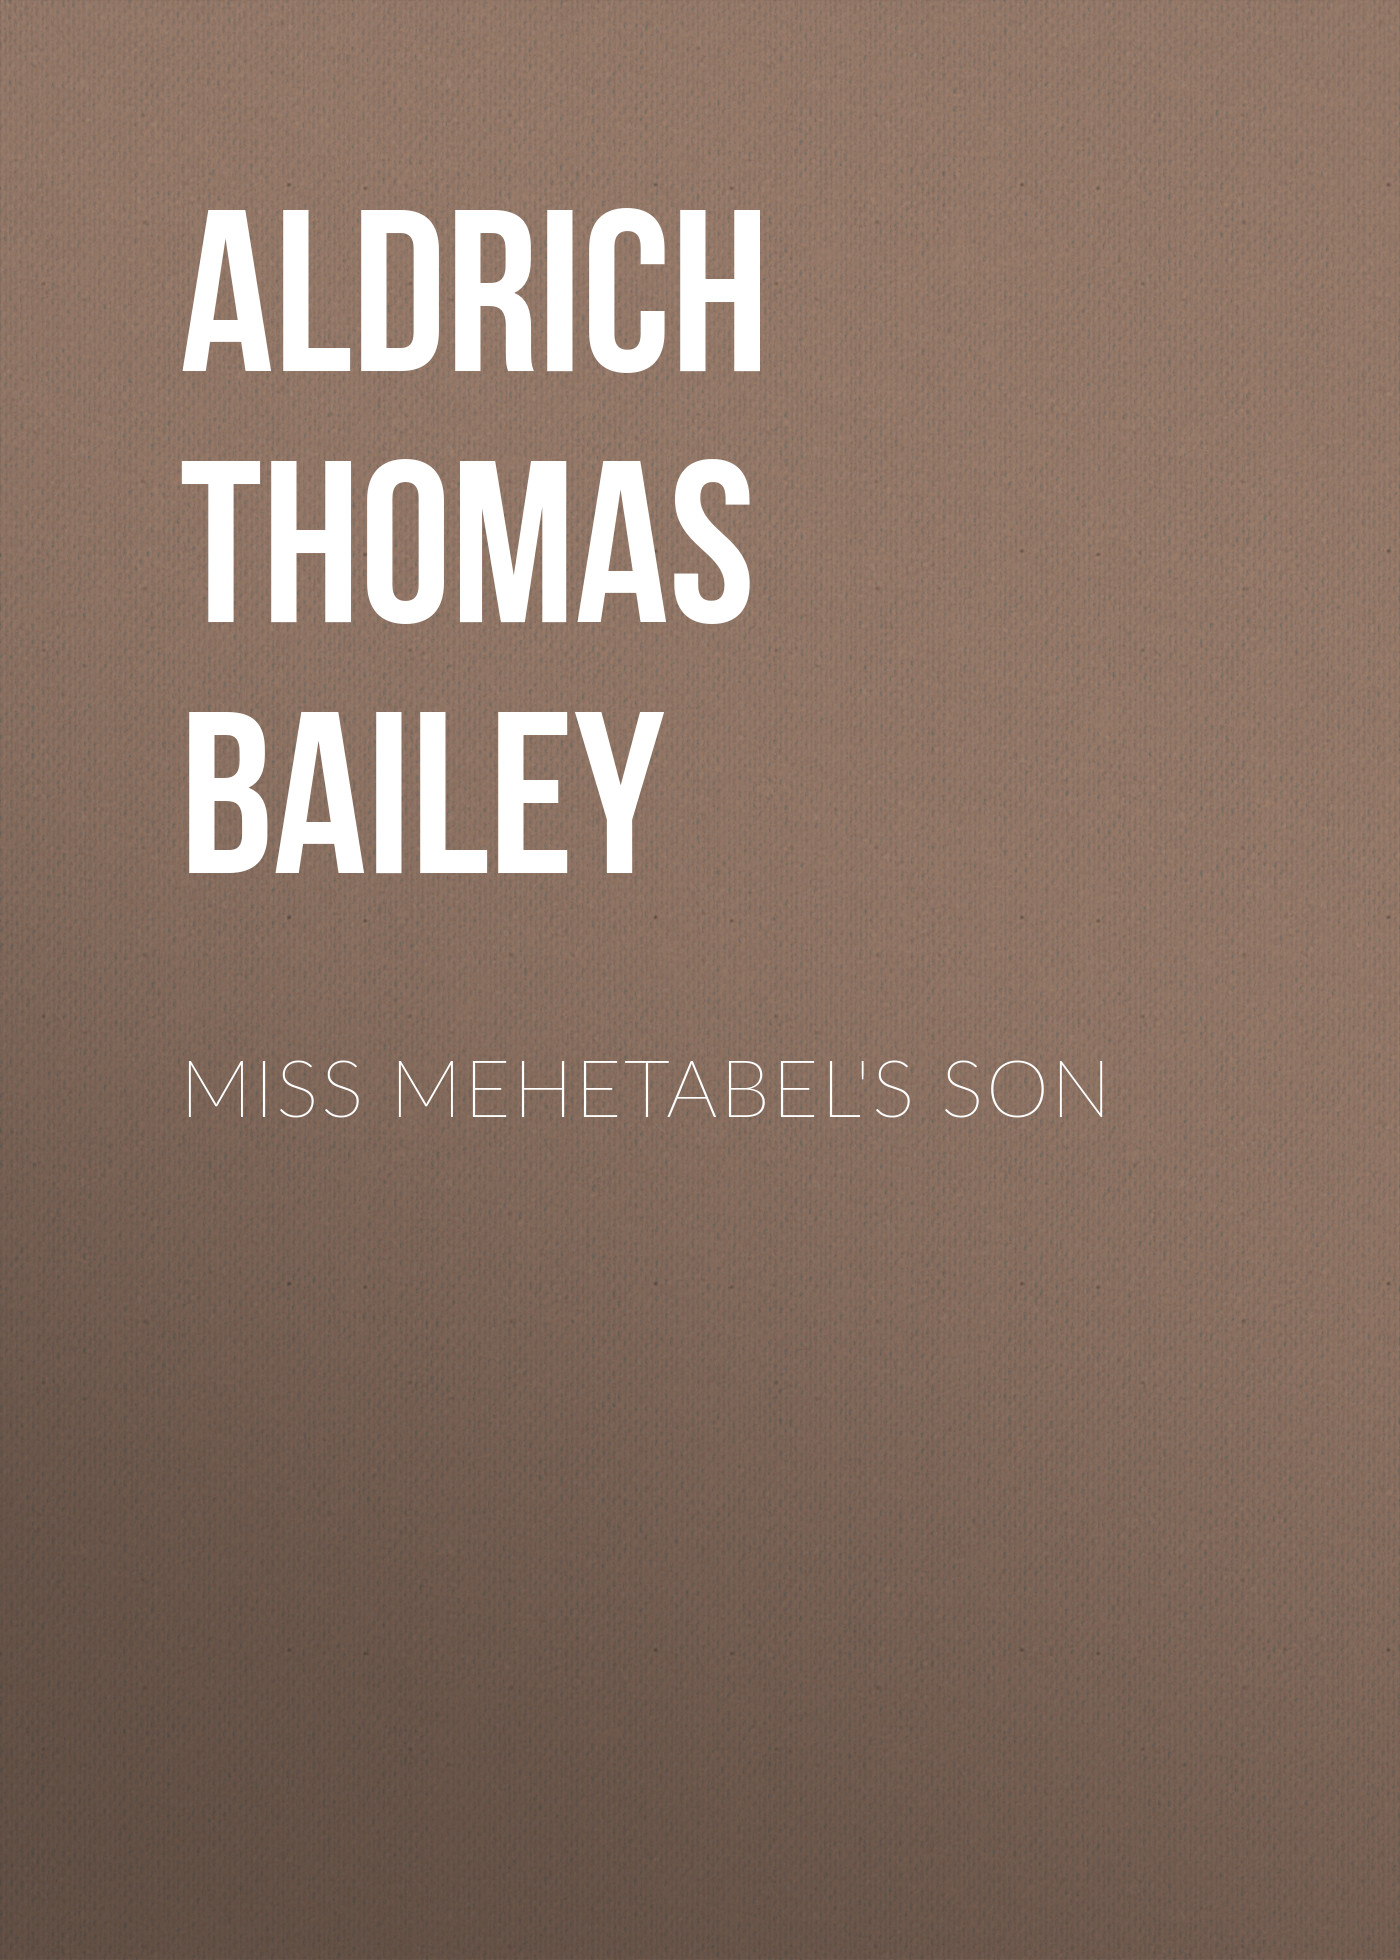 Книга Miss Mehetabel's Son из серии , созданная Thomas Aldrich, может относится к жанру Зарубежная классика, Литература 19 века, Зарубежная старинная литература. Стоимость электронной книги Miss Mehetabel's Son с идентификатором 36367318 составляет 0 руб.